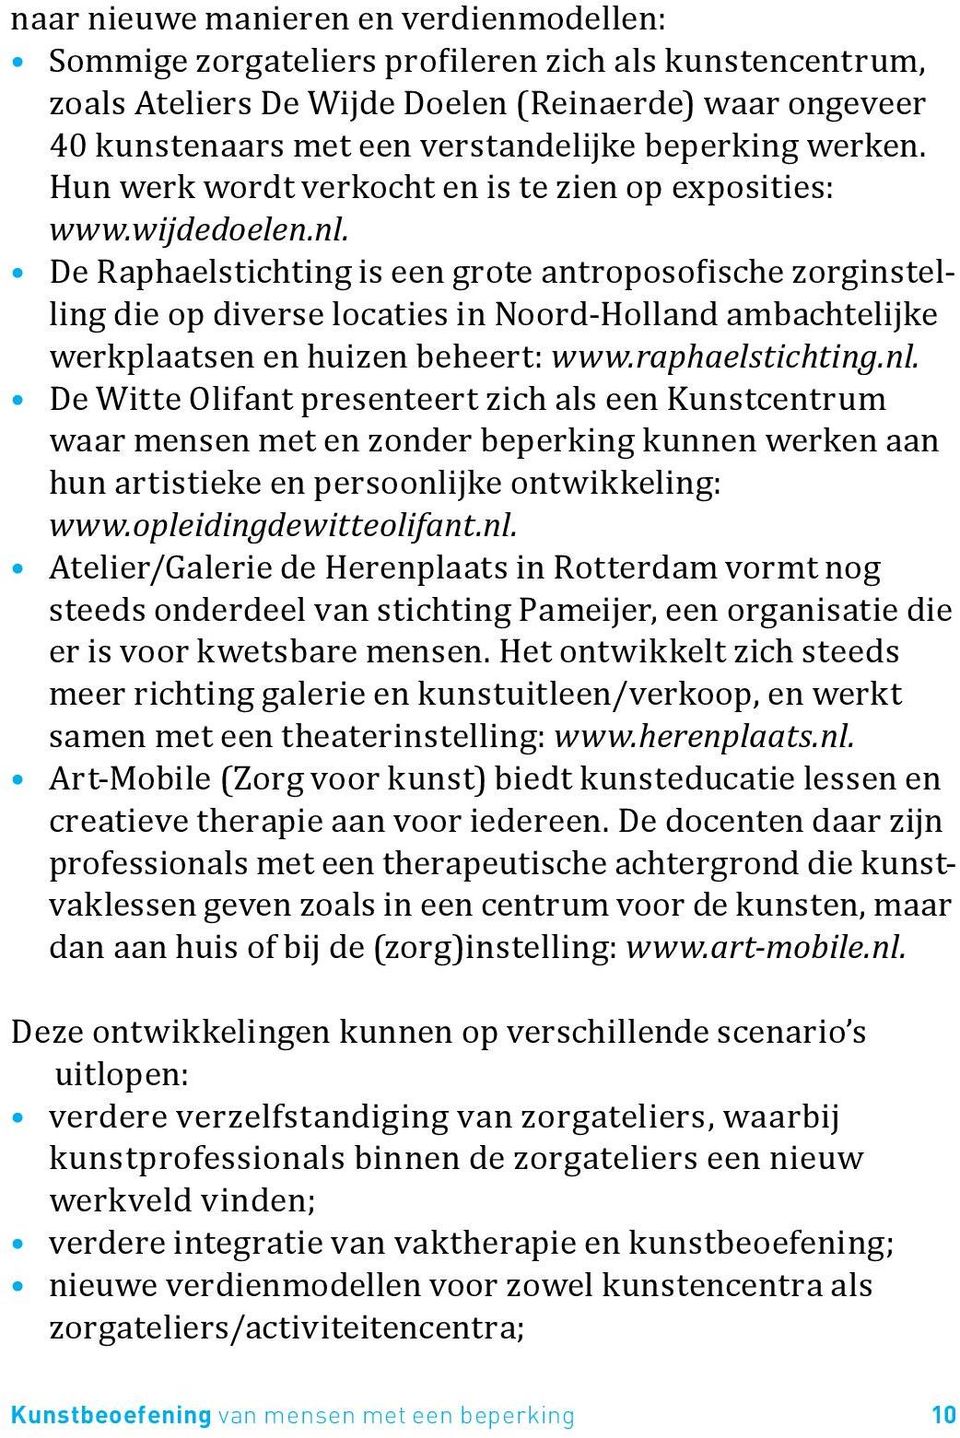 De Raphaelstichting is een grote antroposofische zorginstelling die op diverse locaties in Noord-Holland ambachtelijke werkplaatsen en huizen beheert: www.raphaelstichting.nl.